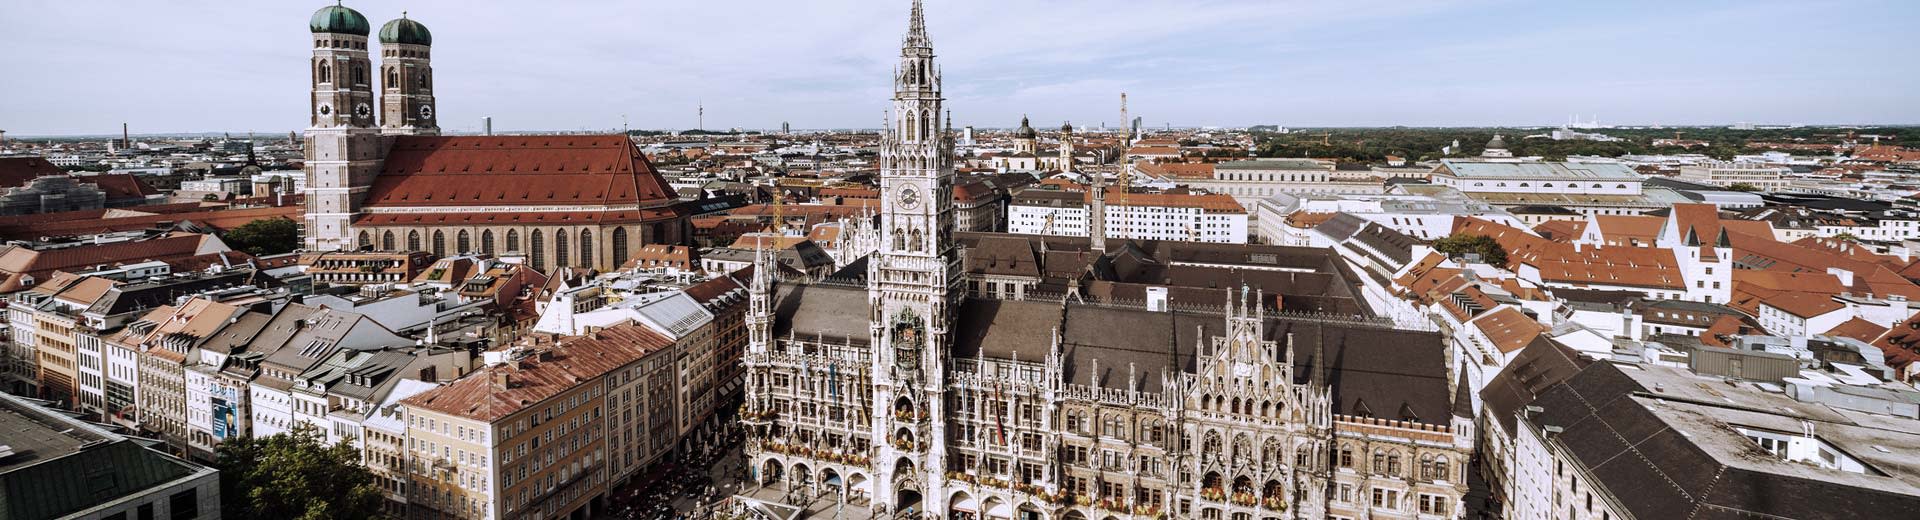 晴朗的一天，慕尼黑的城市广场美不胜收，教堂的尖顶占据了整个天际线。